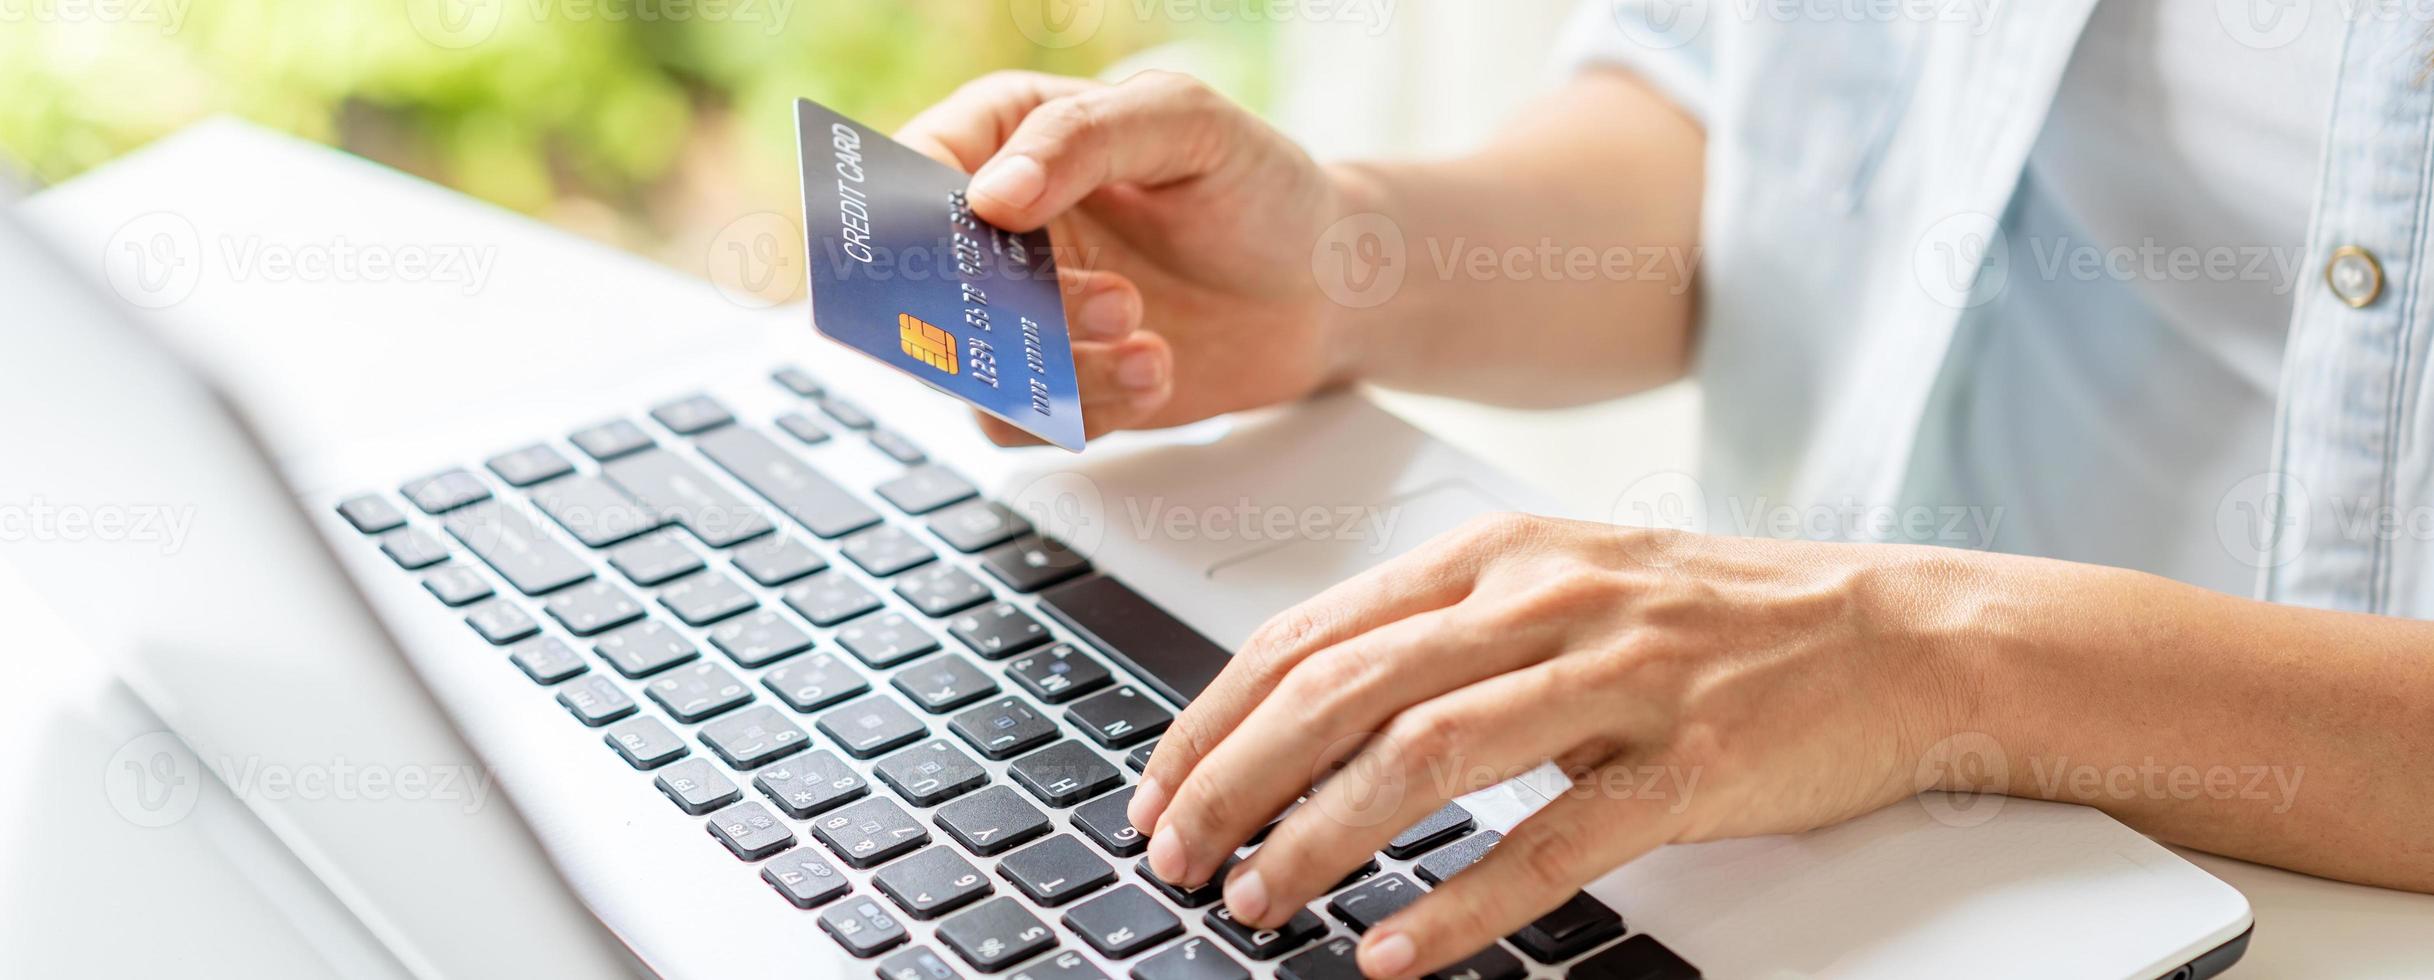 jovem segurando um cartão de crédito e usando o computador para fazer compras de pagamento online foto